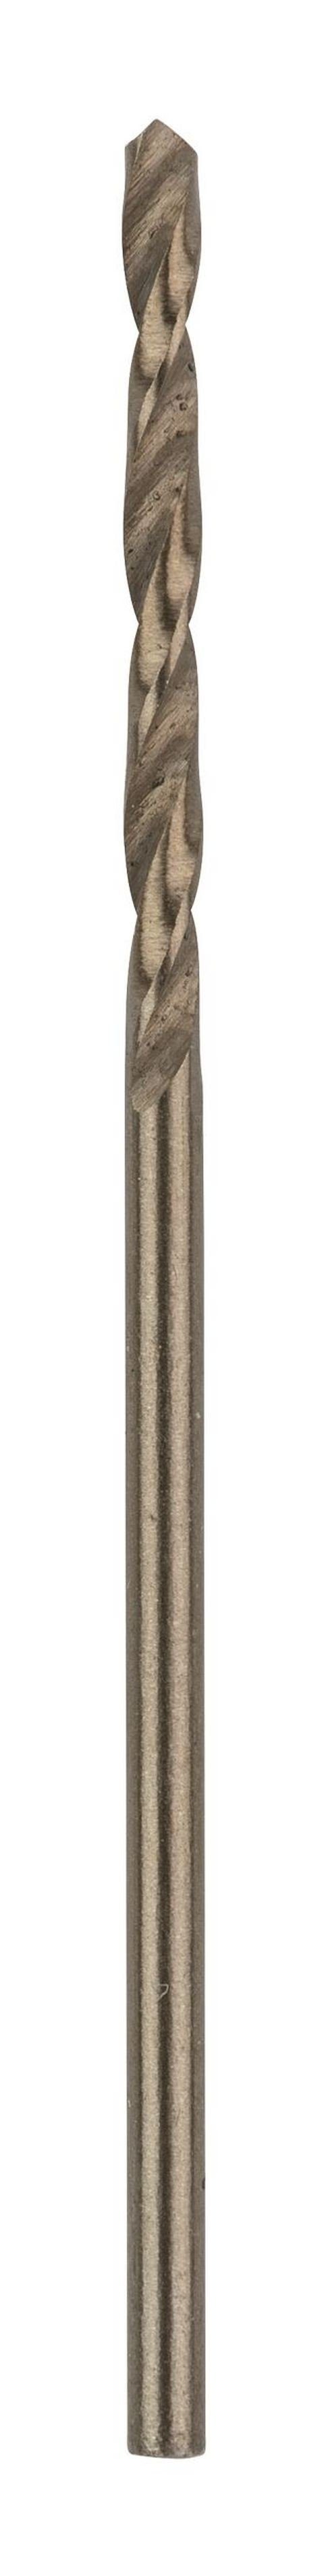 BOSCH Metallbohrer, HSS-Co - - x x 1,5 (DIN mm 18 338) Stück), (10 10er-Pack 40